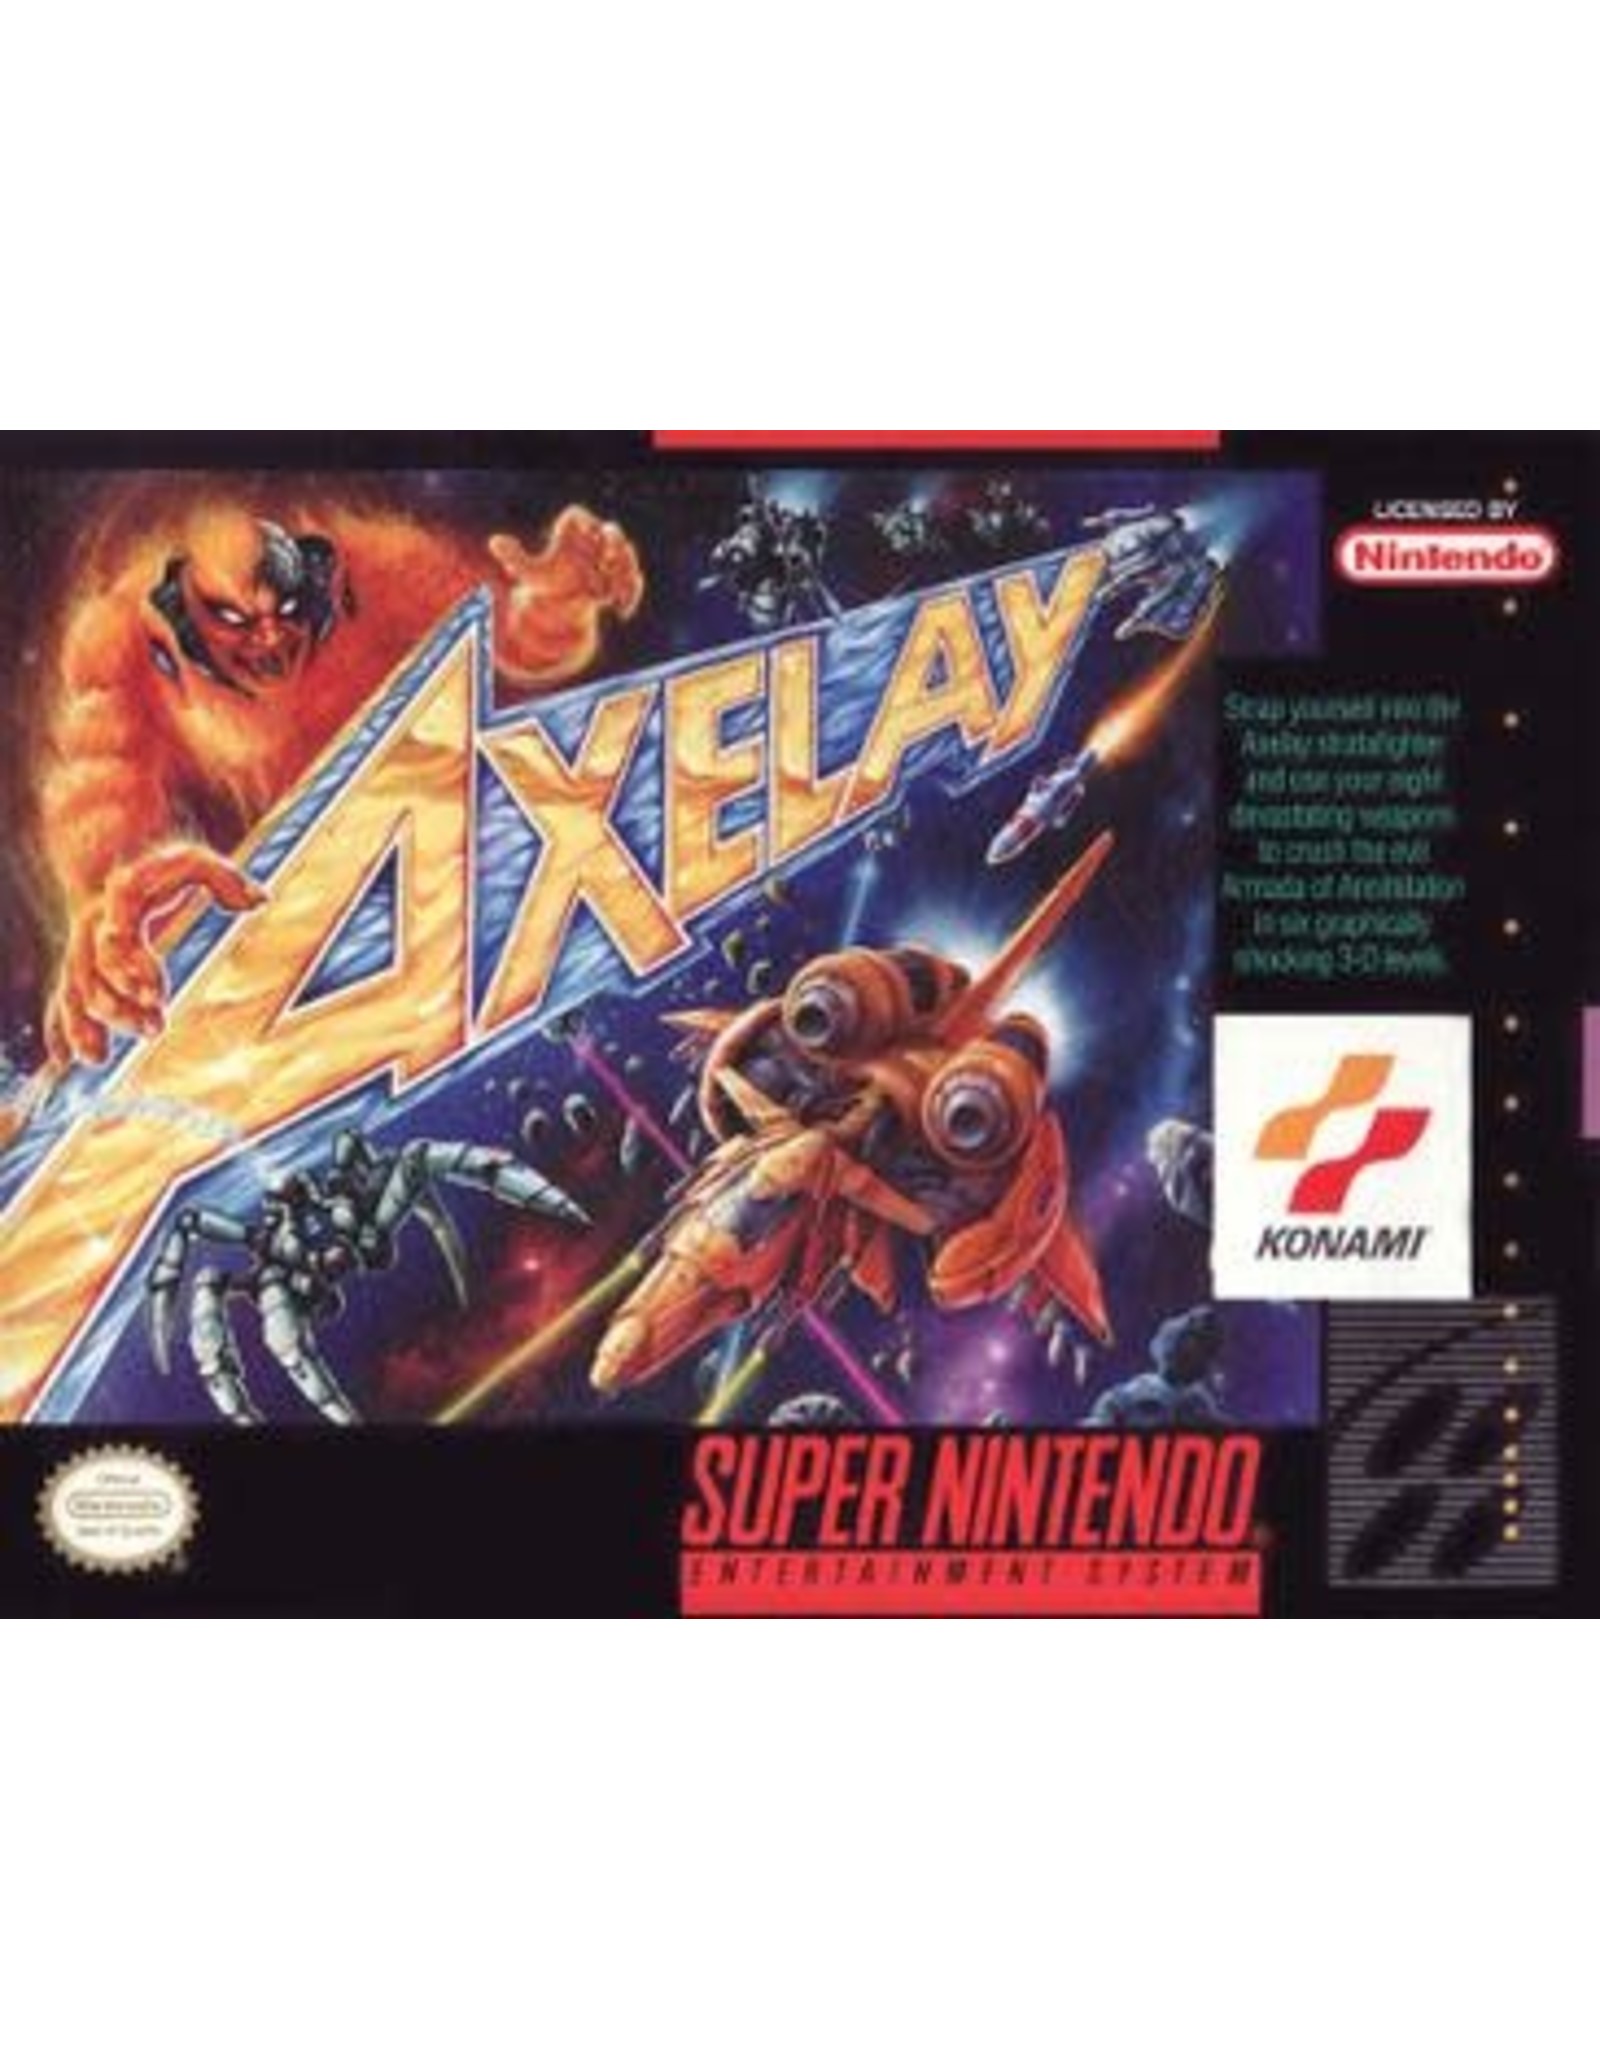 Super Nintendo Axelay (CiB, Damaged Box and Manual, Writing on Cart)